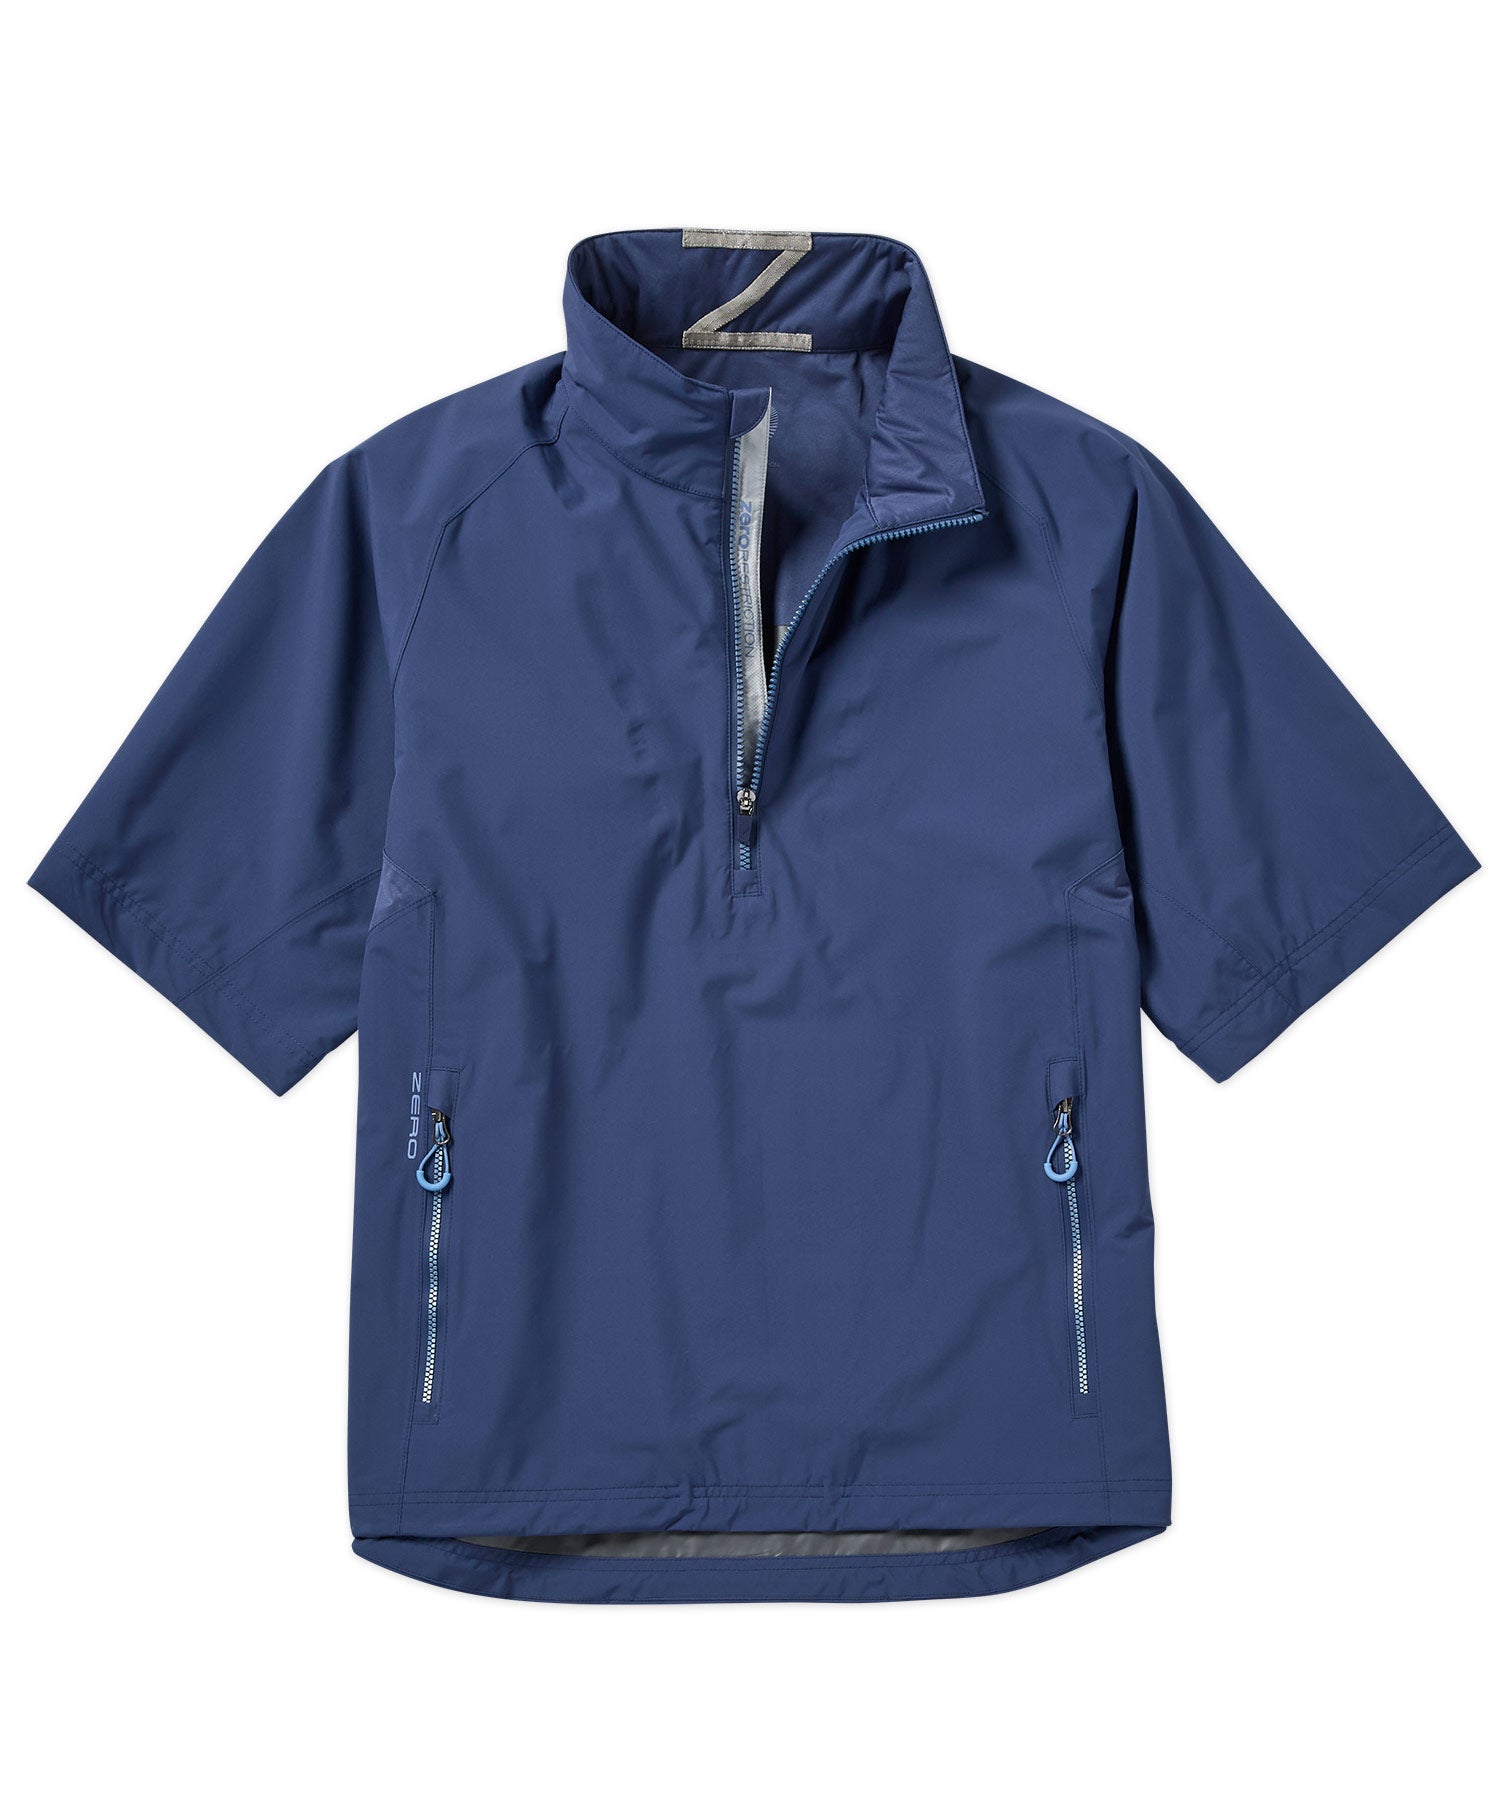 Zero Restriction Half-Sleeve Waterproof Quarter-Zip Jacket, Men's Big & Tall